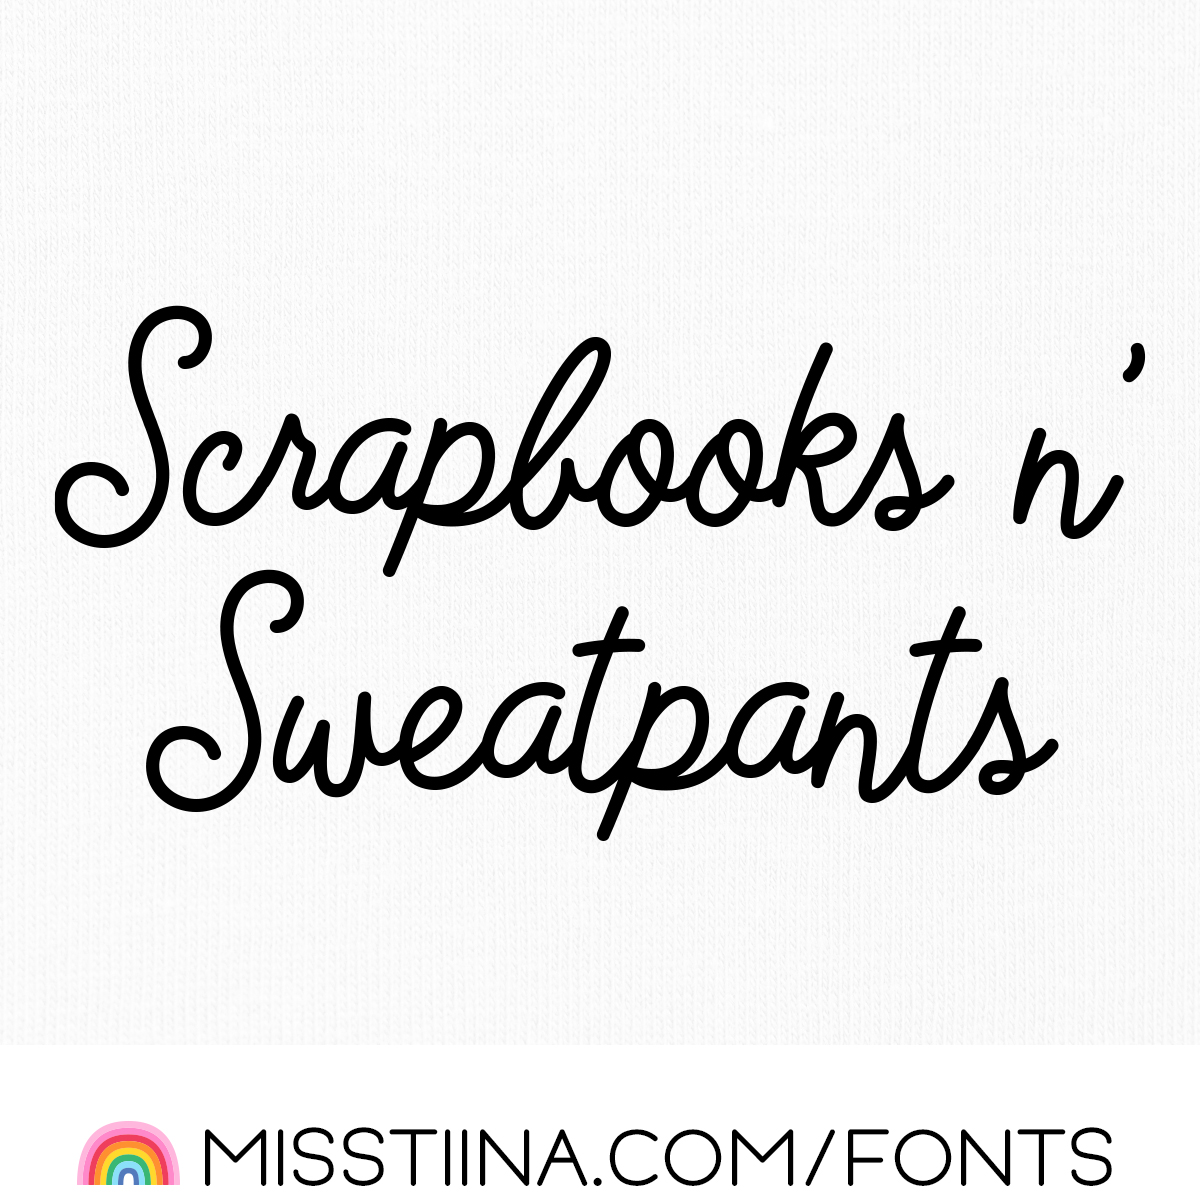 MTF Scrapbooks n' Sweatpants Font